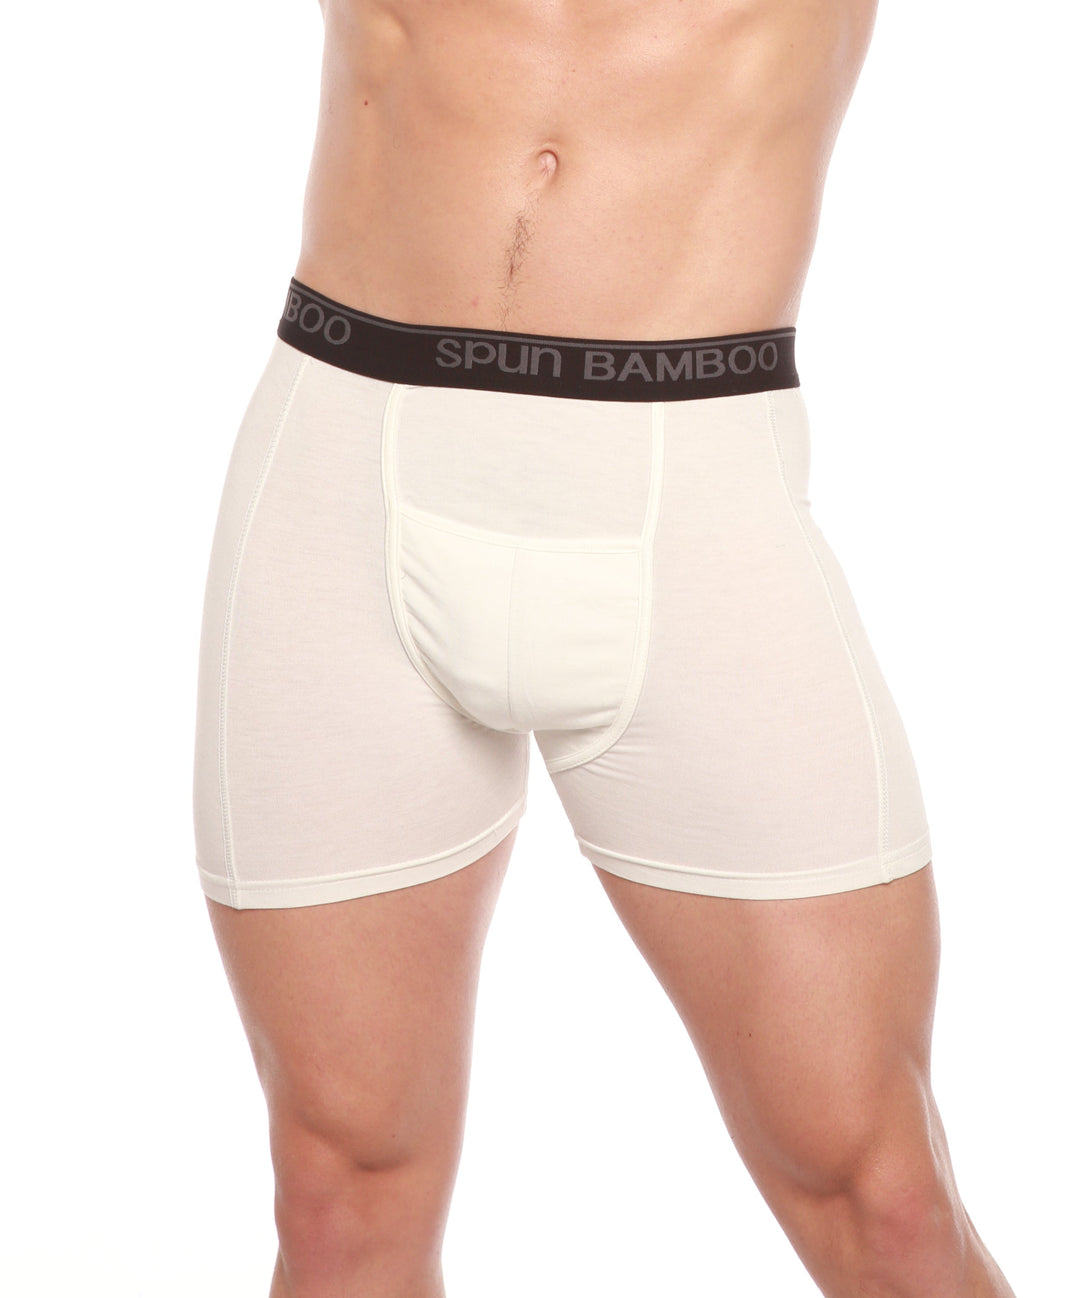 Silk Underwear For Men  Buy Online & Save - NZ Wide Delivery